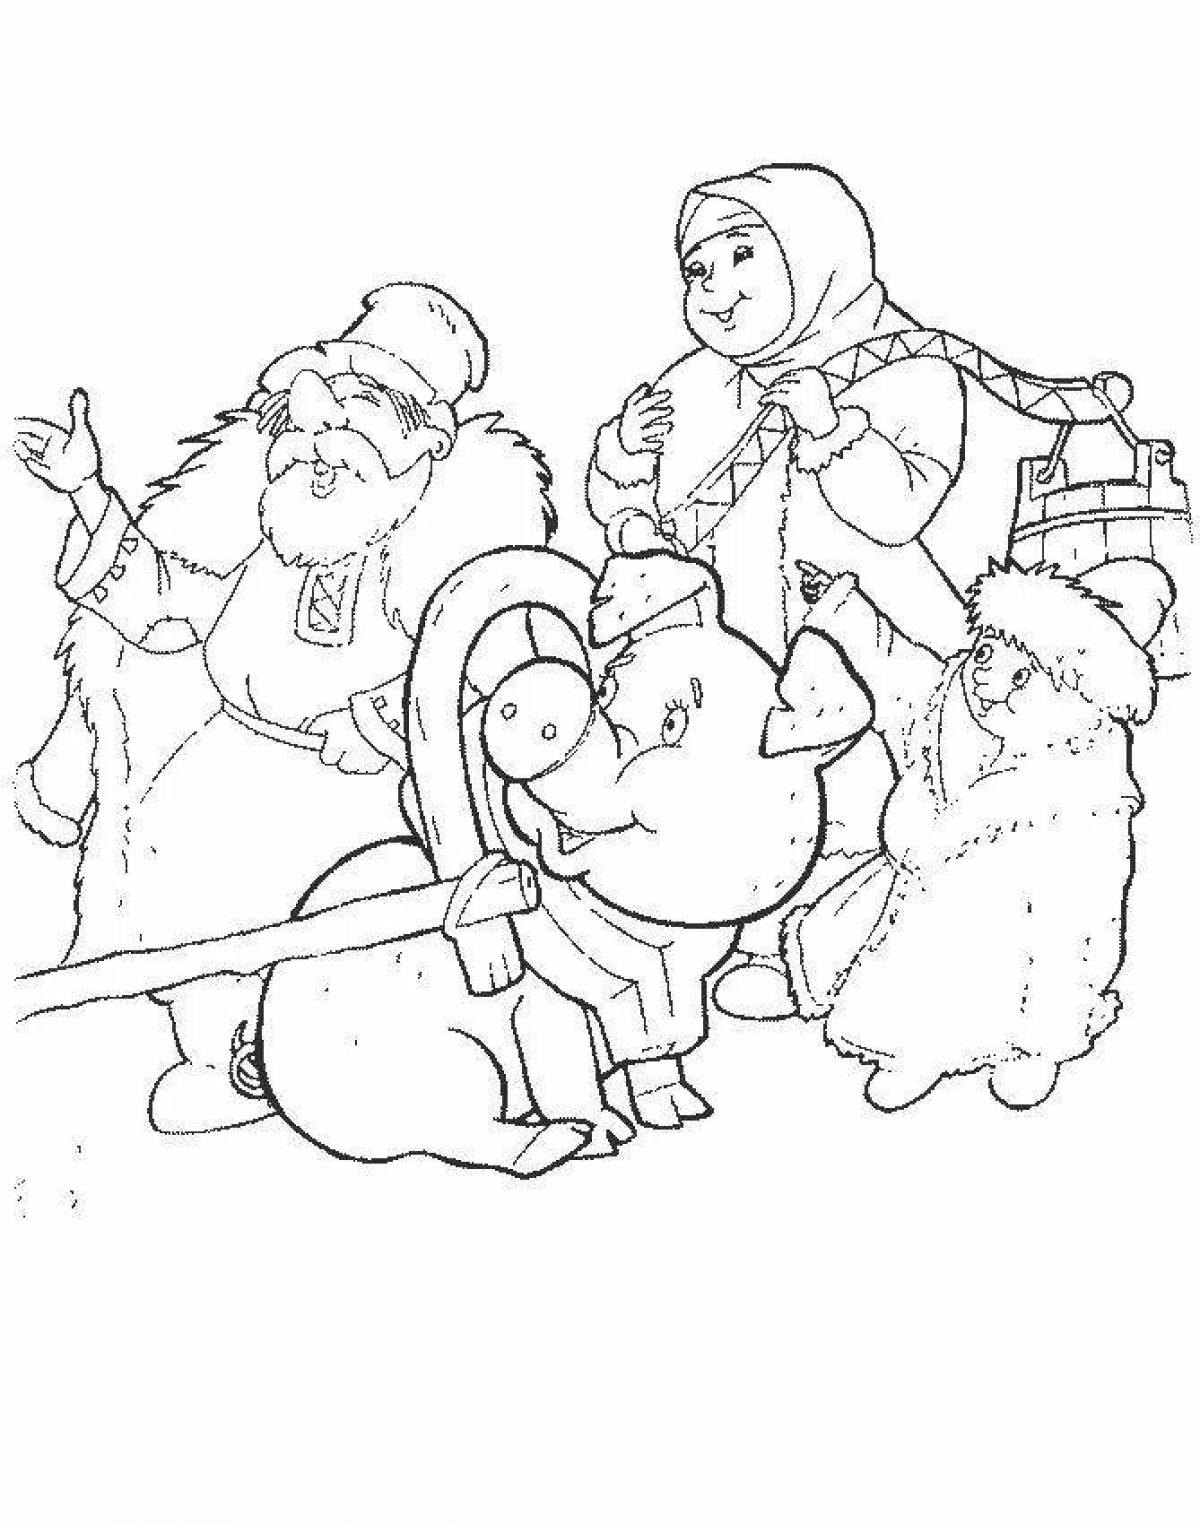 Детские рисунки к сказке мороз иванович 3 класс карандашом легко